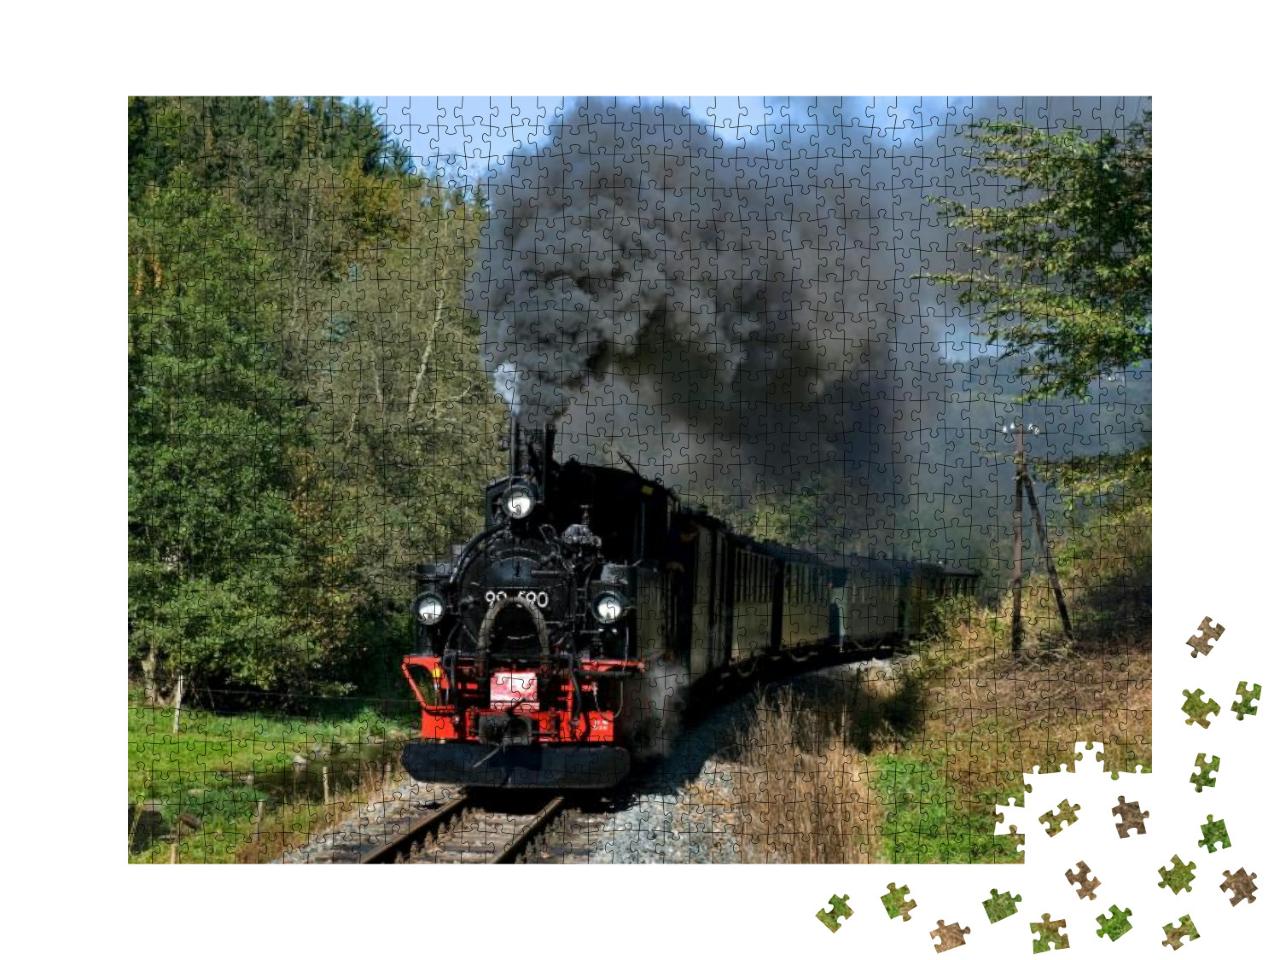 Steinbach, Saxony/ Germany - September 26 2009 Nostalgic... Jigsaw Puzzle with 1000 pieces